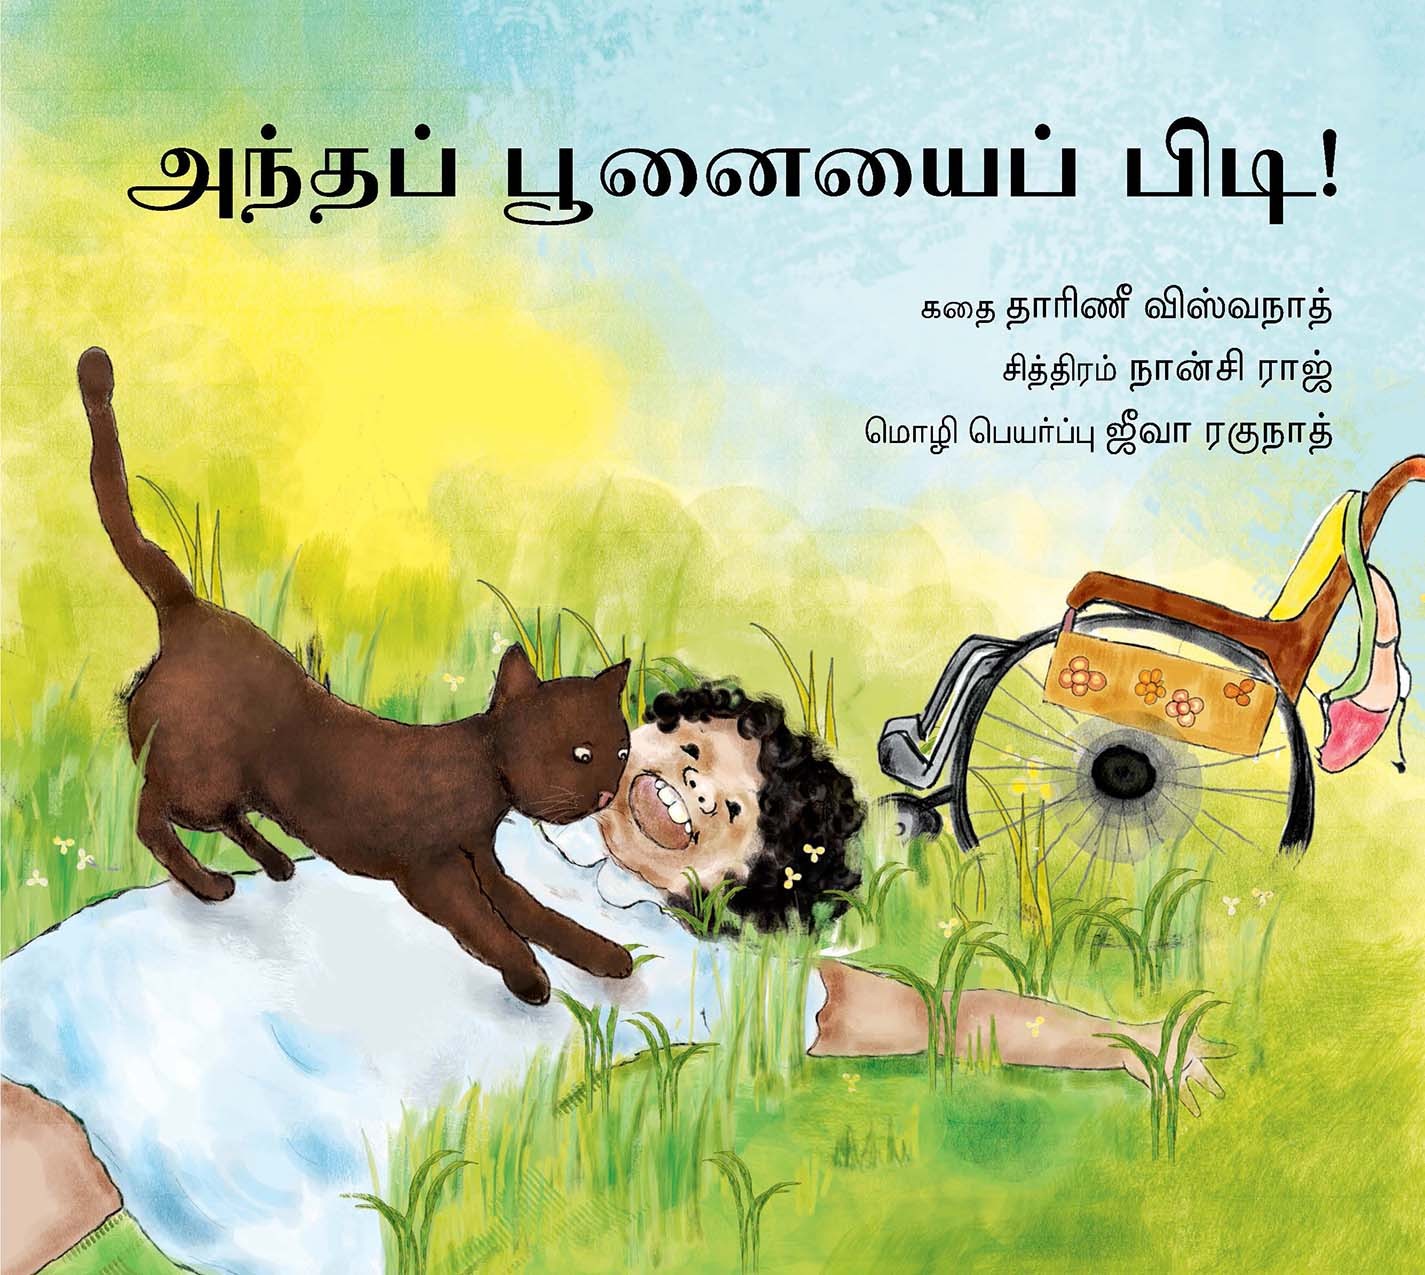 Catch That Cat/Antha Poonaiyai Pidi! (Tamil)